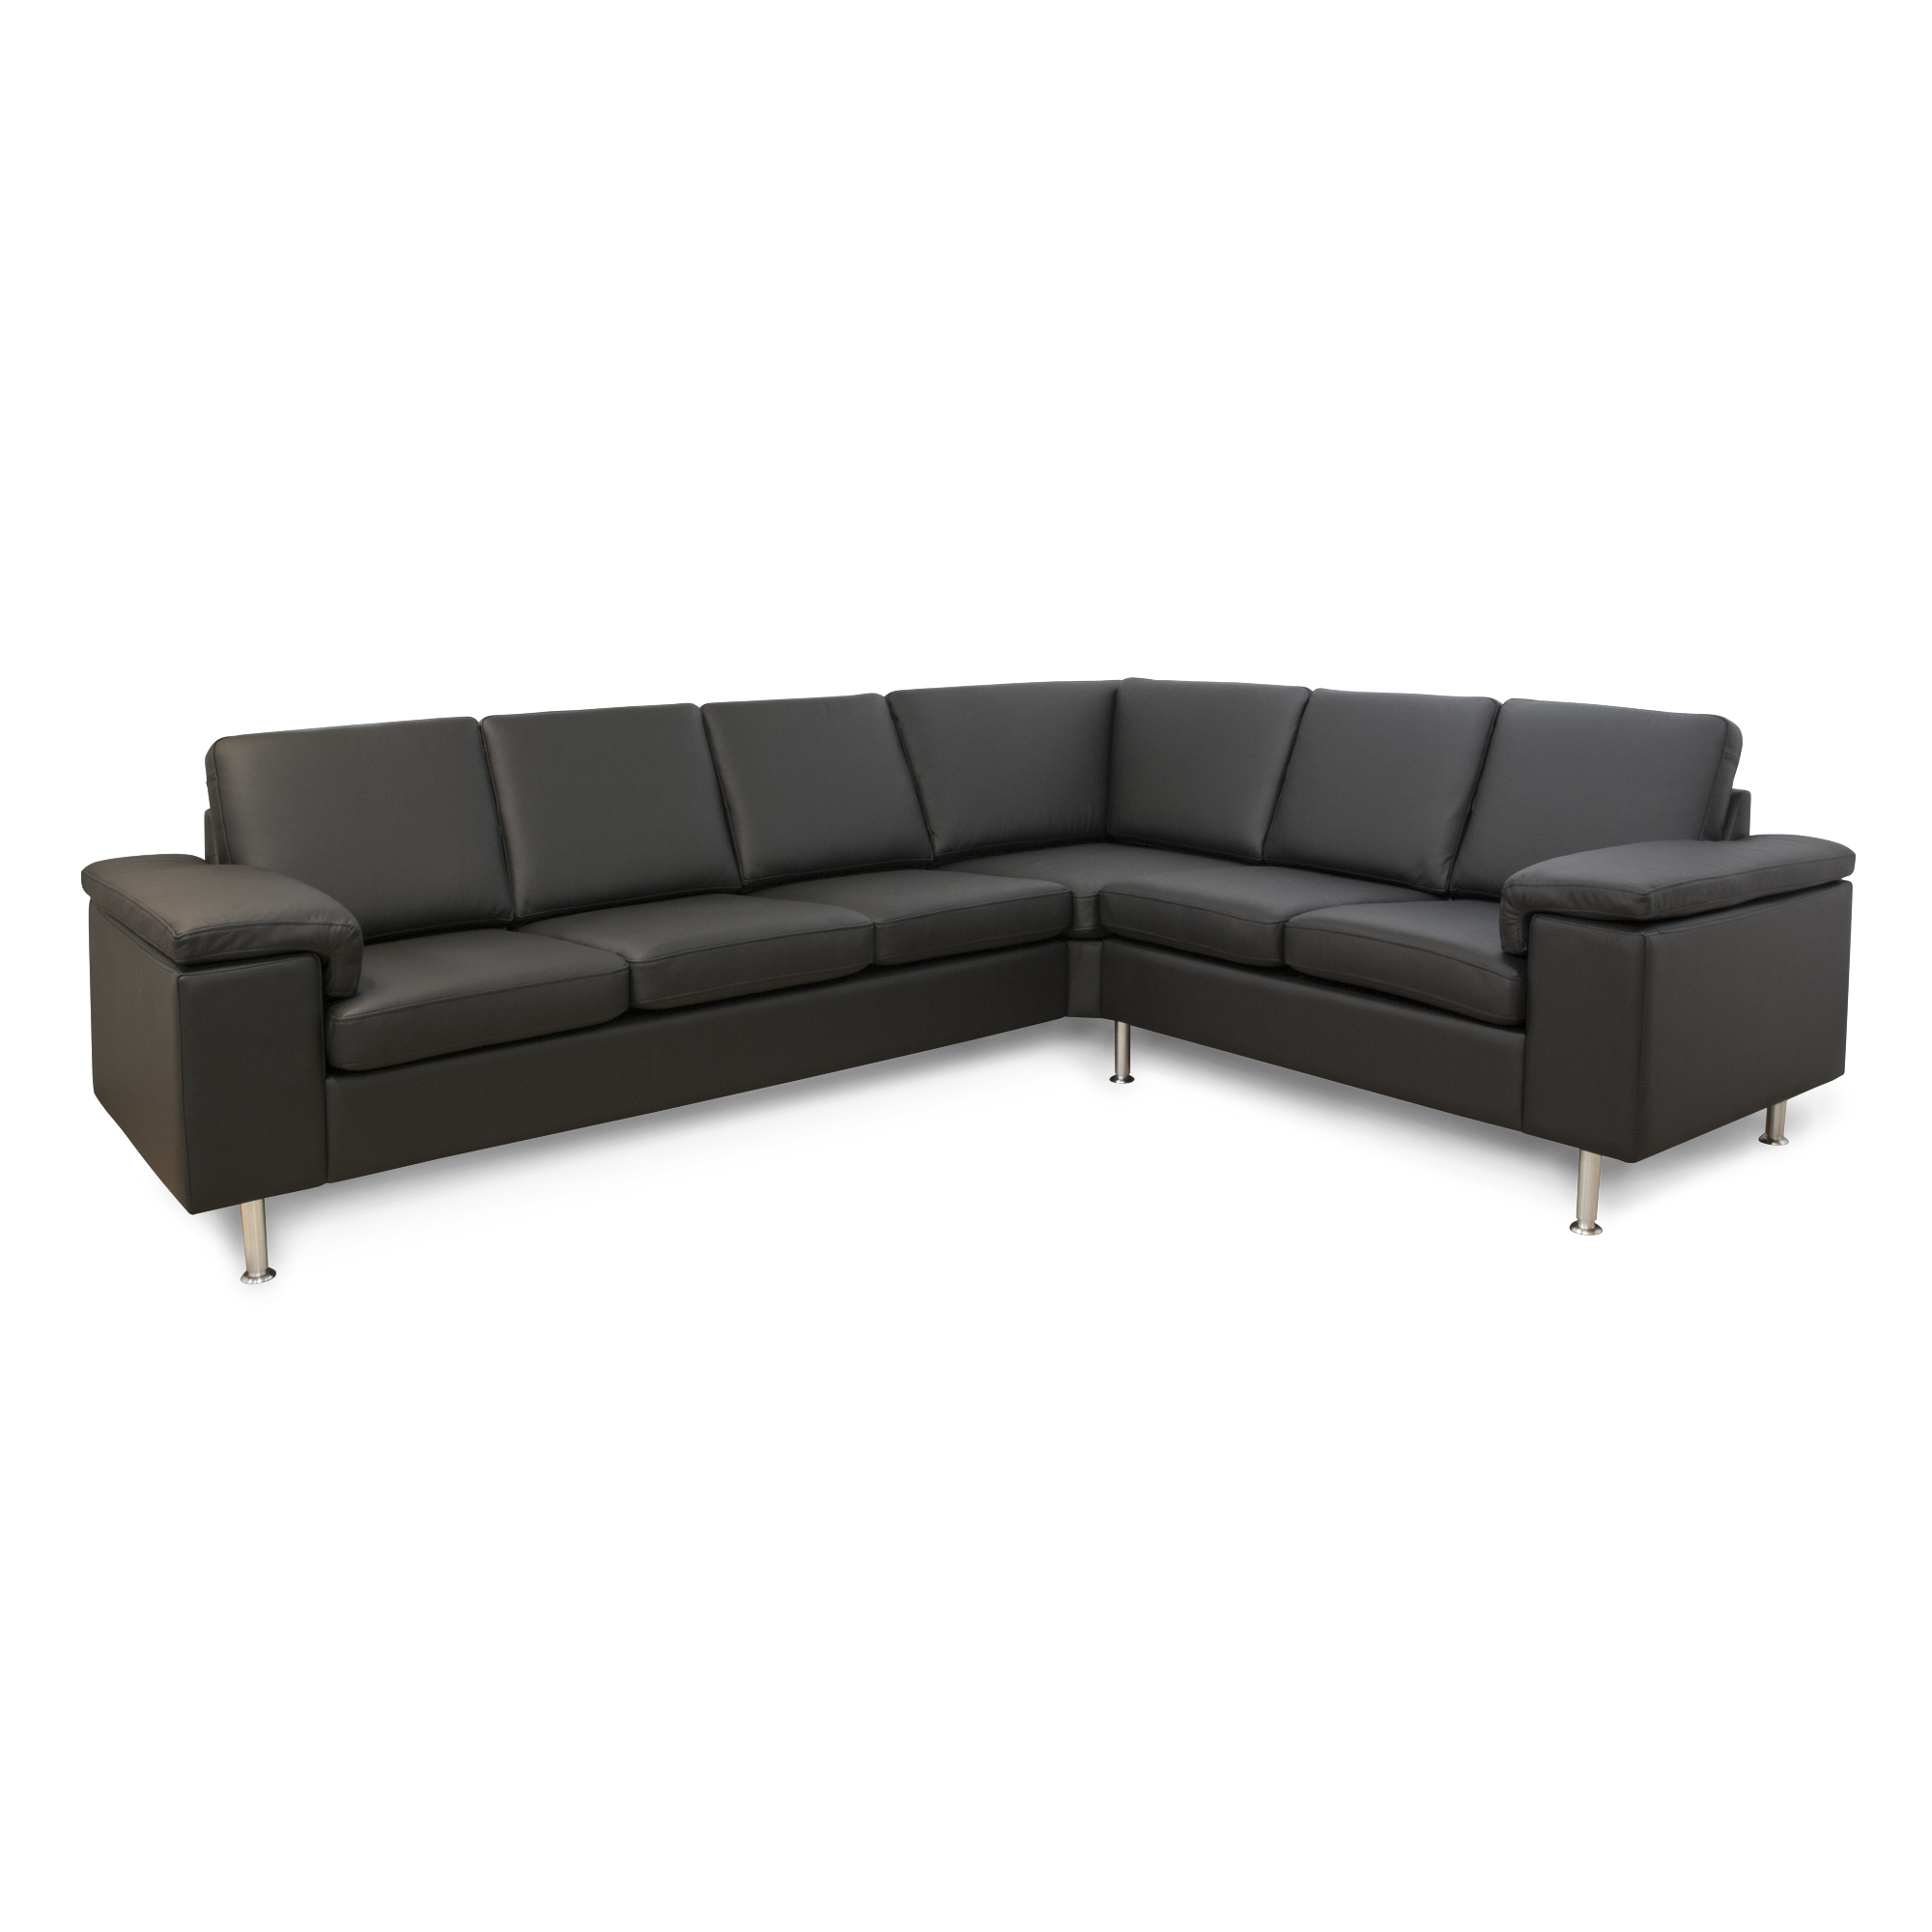 For en dagstur Feasibility Psykologisk Sofa | Se stort udvalg til billige priser | My Home Møbler - My Home Møbler